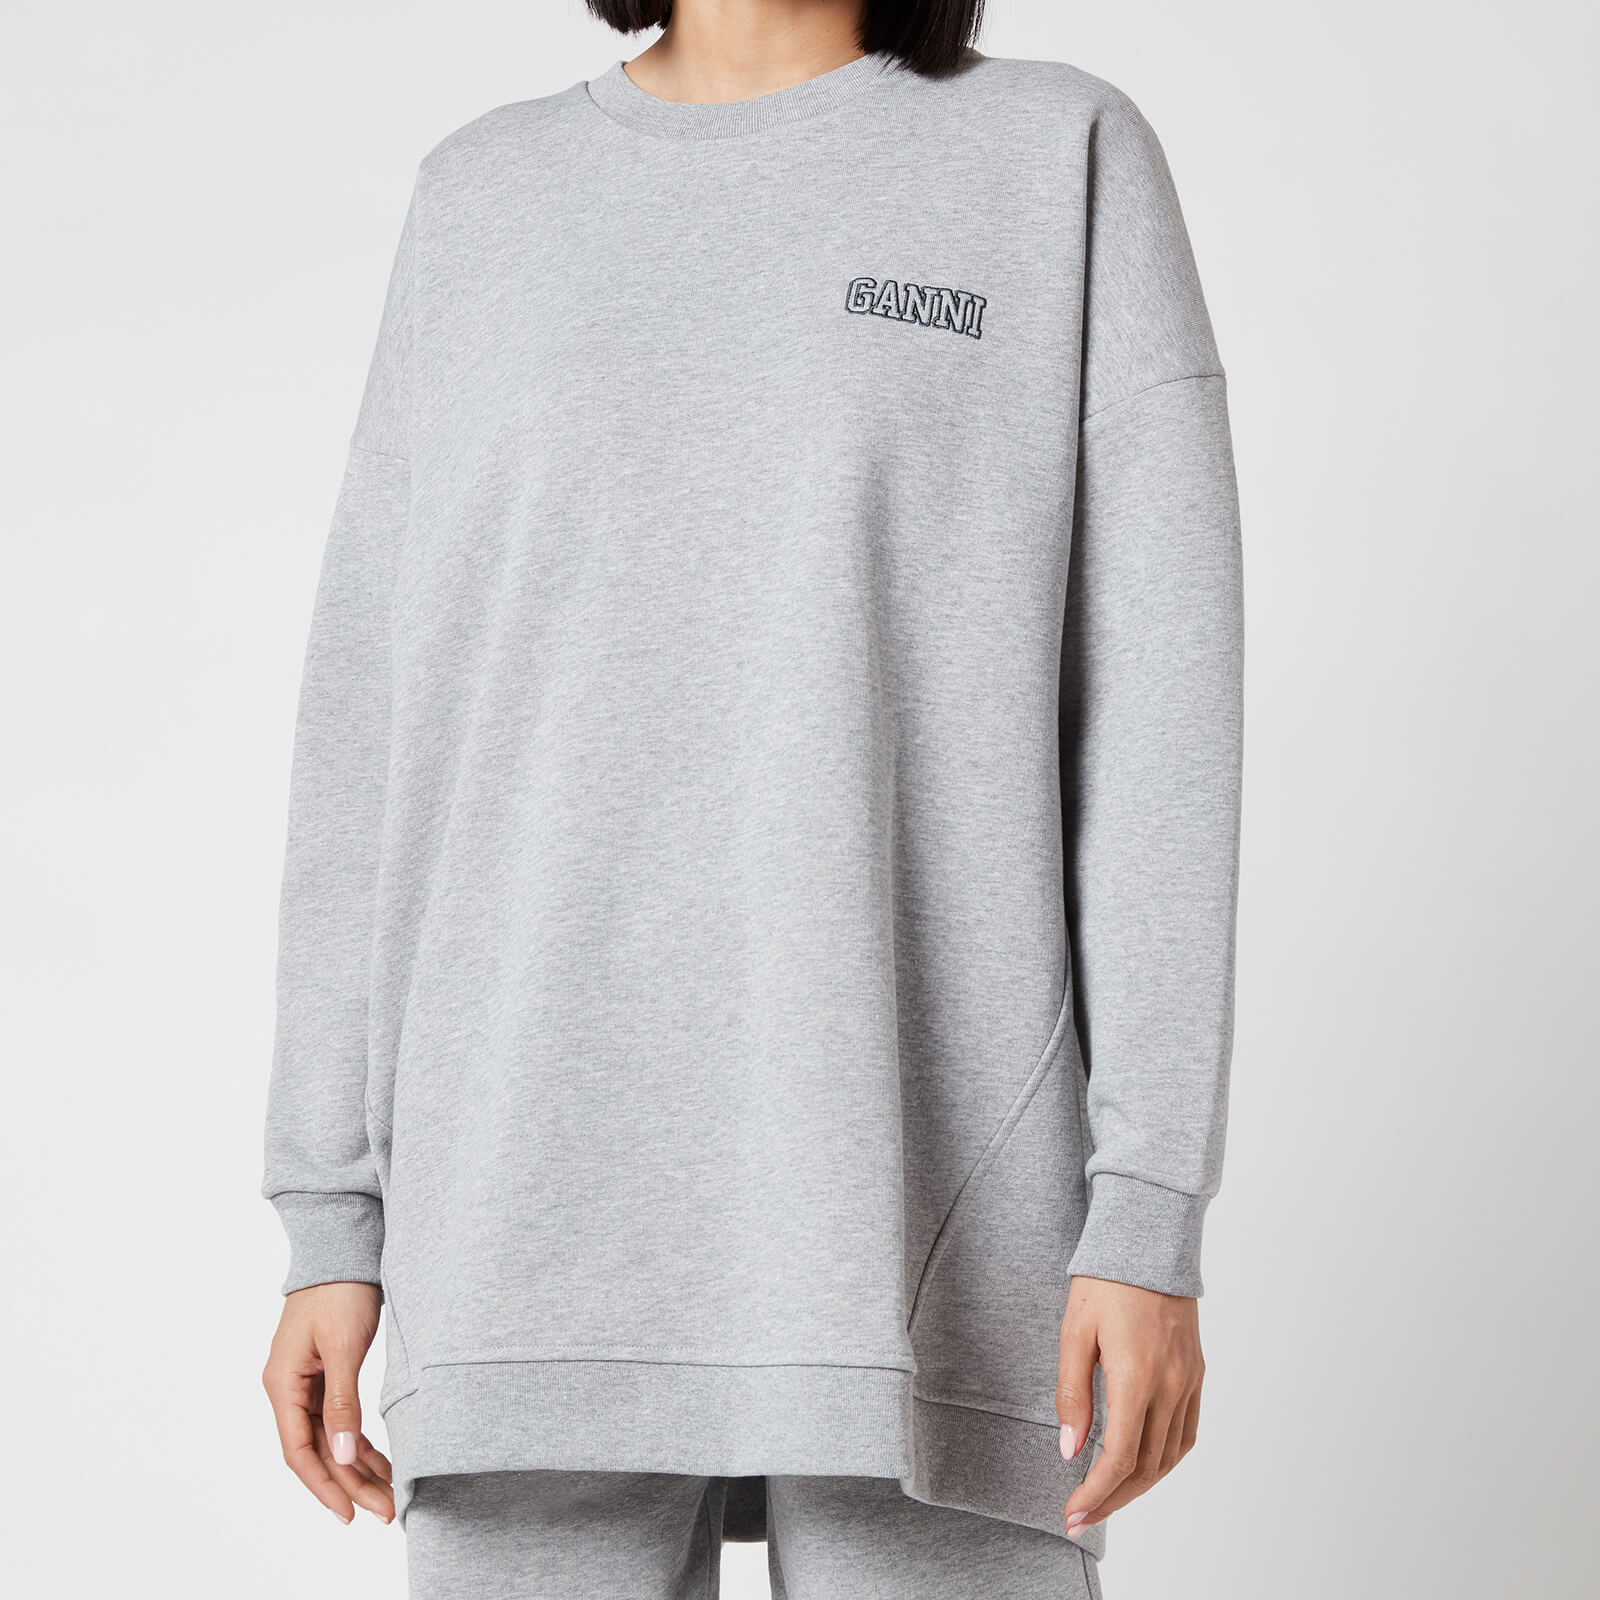 Ganni Women's Software Isoli Oversized Sweatshirt - Paloma Melange - S/M